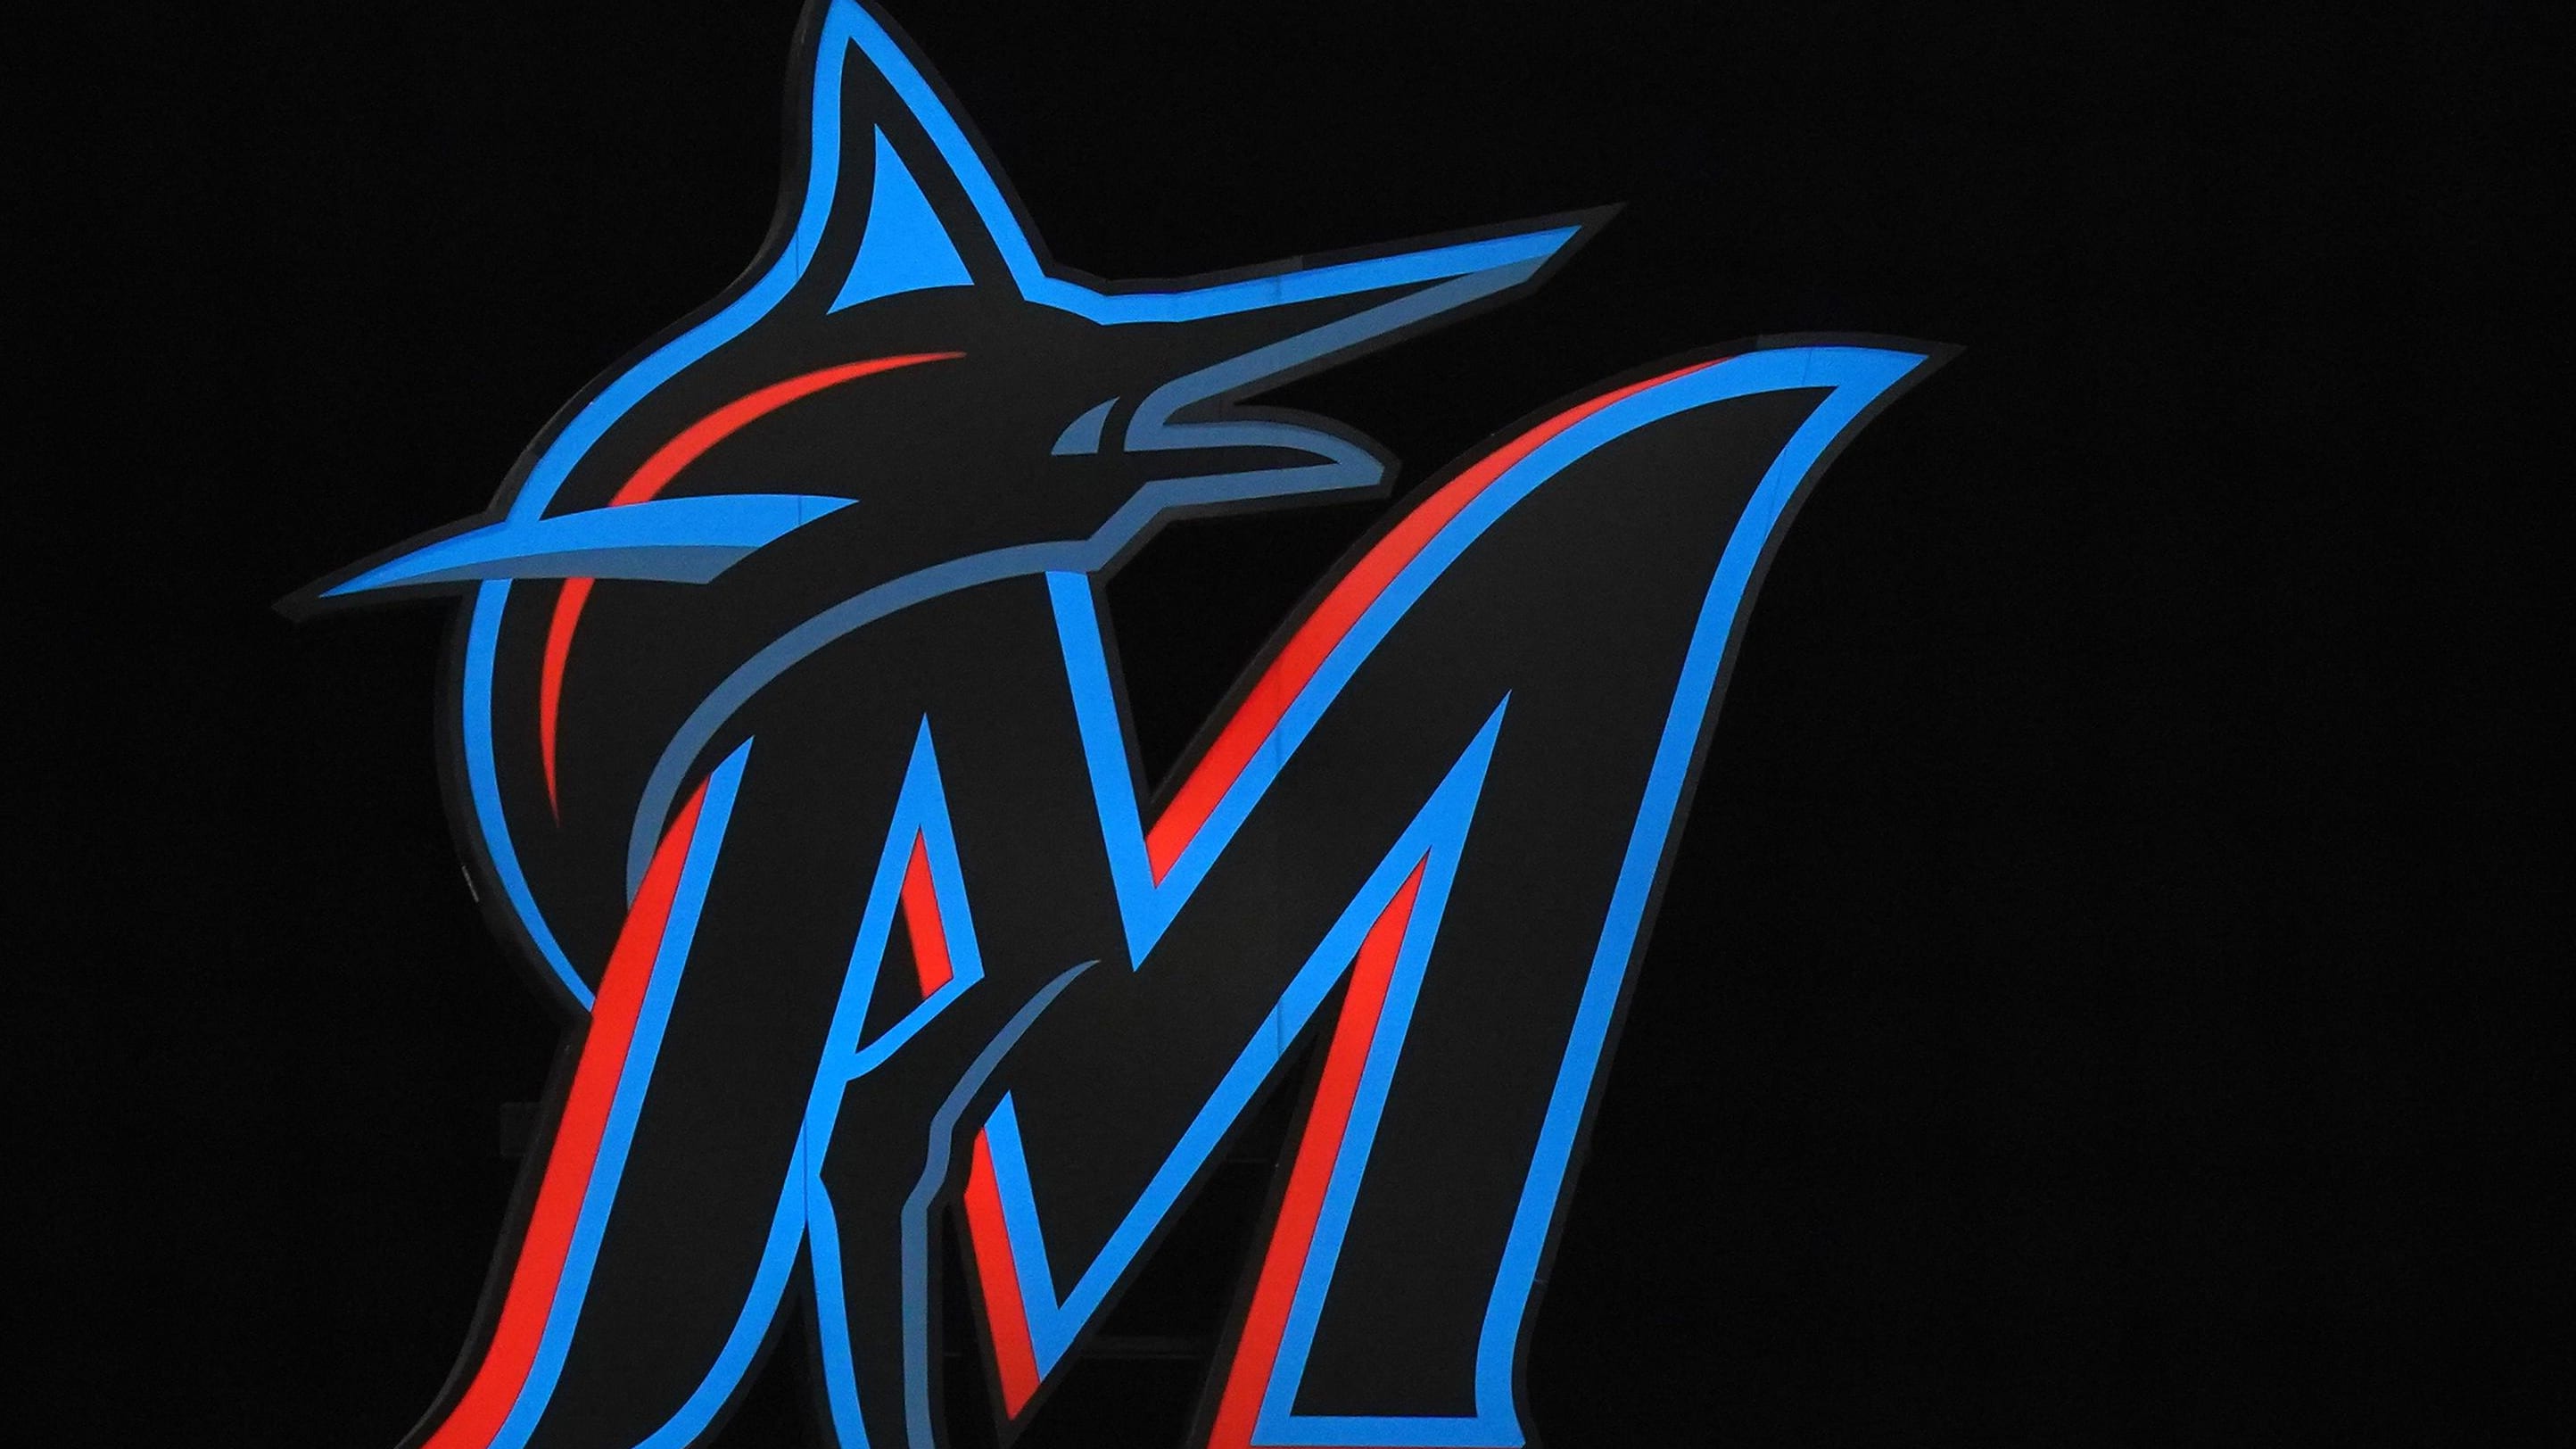 Miami Marlins logo